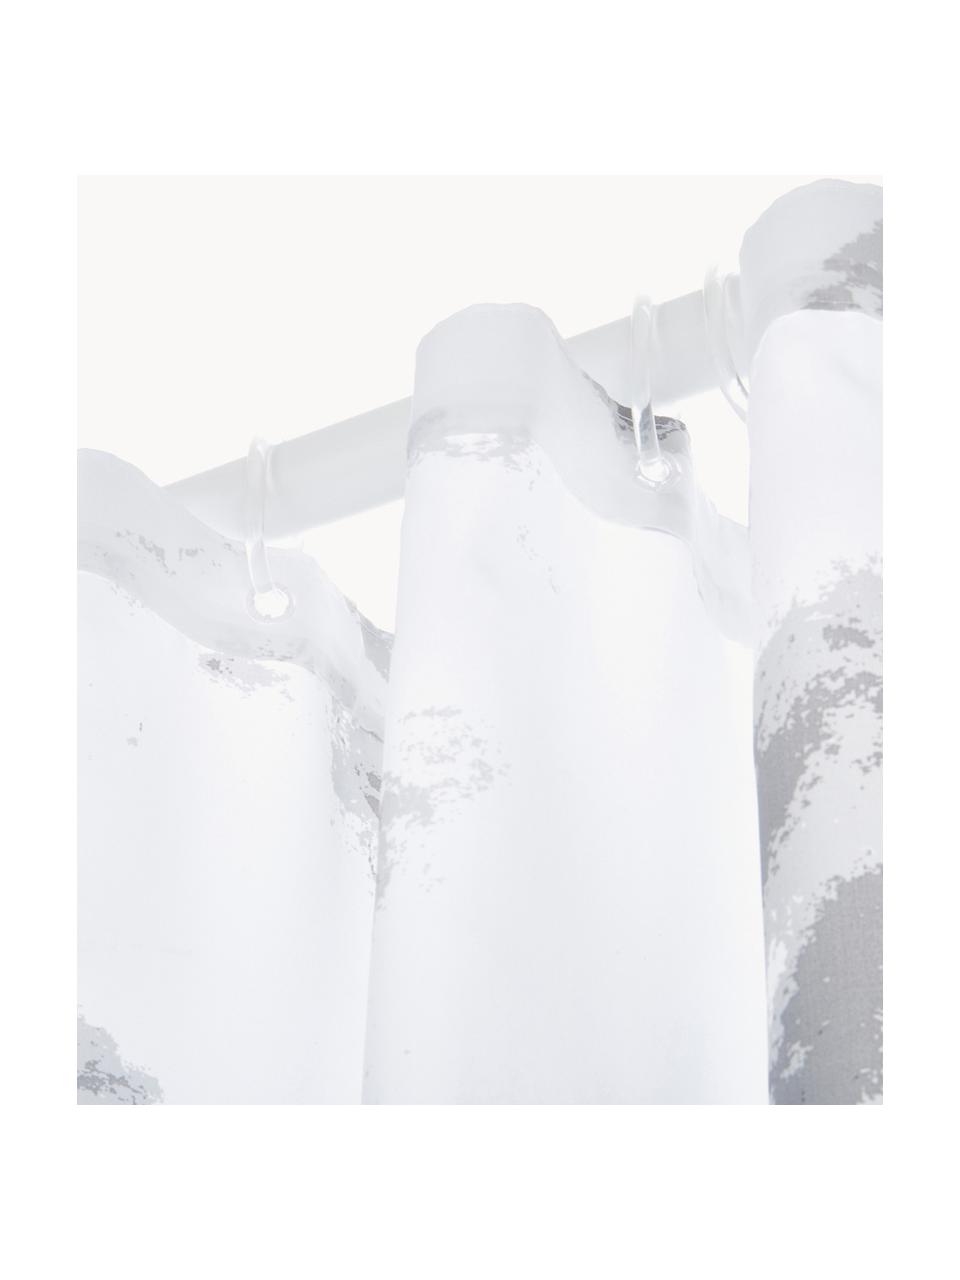 Duschvorhang Marble mit Marmor-Print, 100 % Polyester
Wasserabweisend, nicht wasserdicht, Weiss, Grautöne, B 180 x L 200 cm